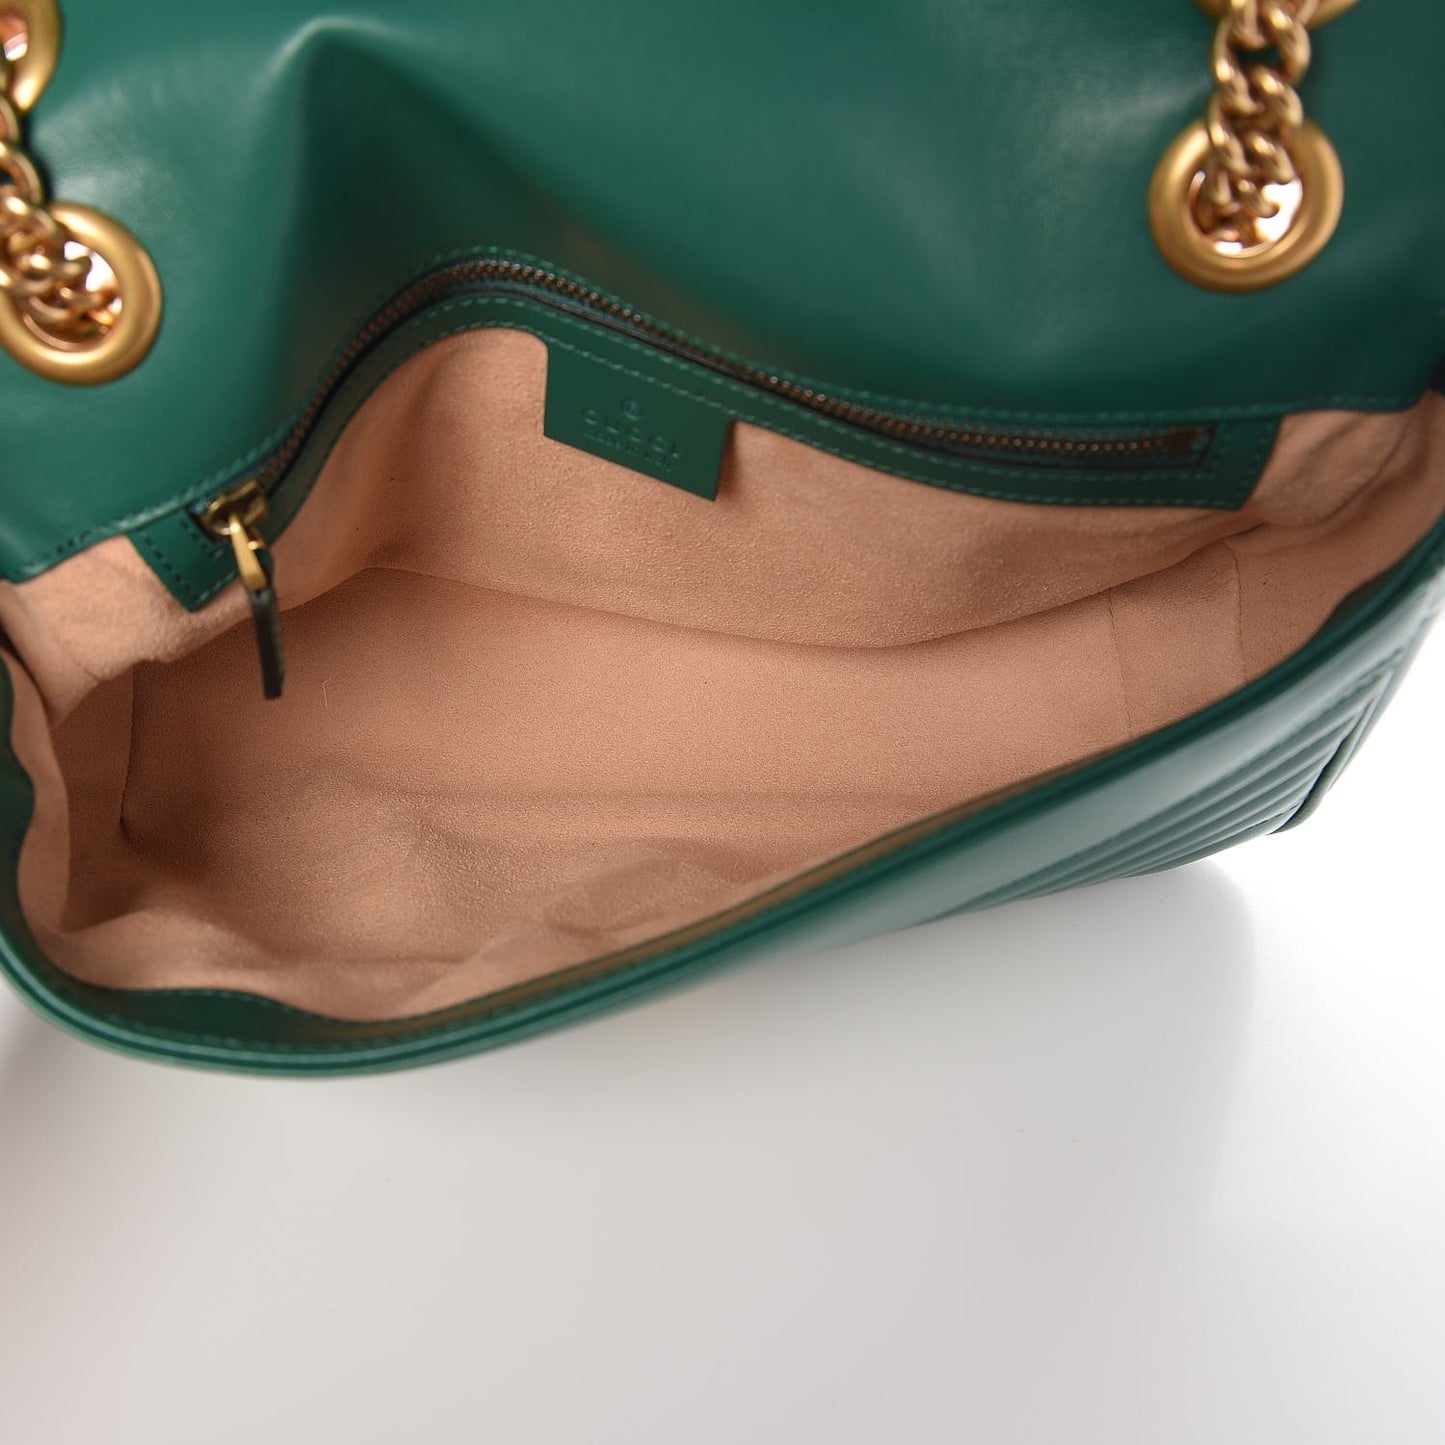 Calfskin Matelasse Small GG Marmont Shoulder Bag Emerald Green